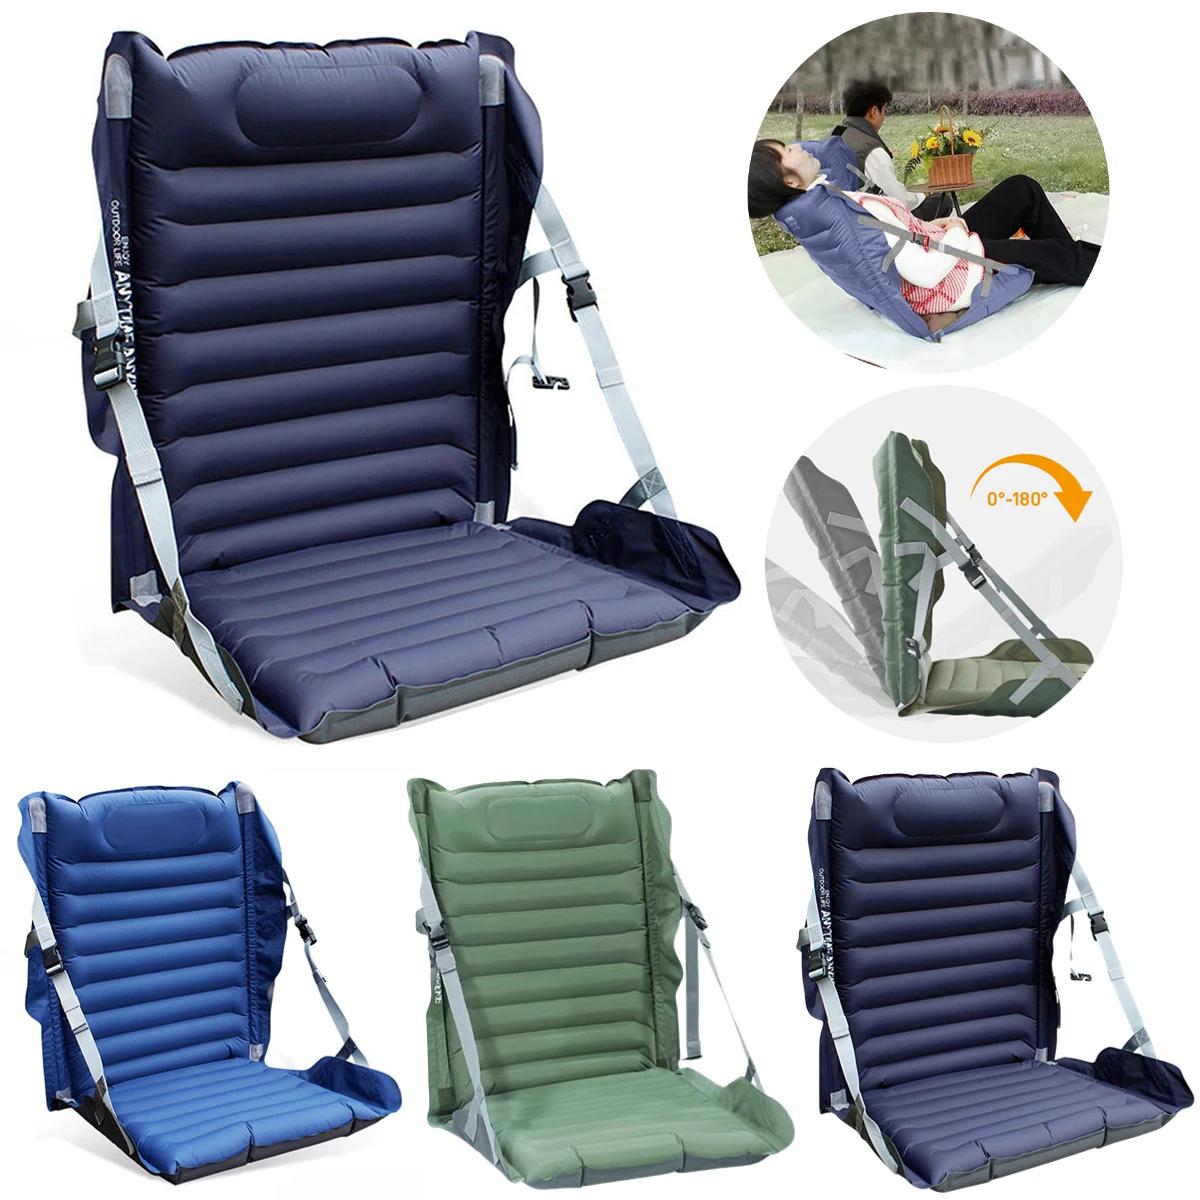 등받이가 있는 야외 접이식 의자, 공기 주입식 캠핑 접이식 의자, 공원 경기장용 등받이 의자, 조절 가능한 휴대용 레저 쿠션